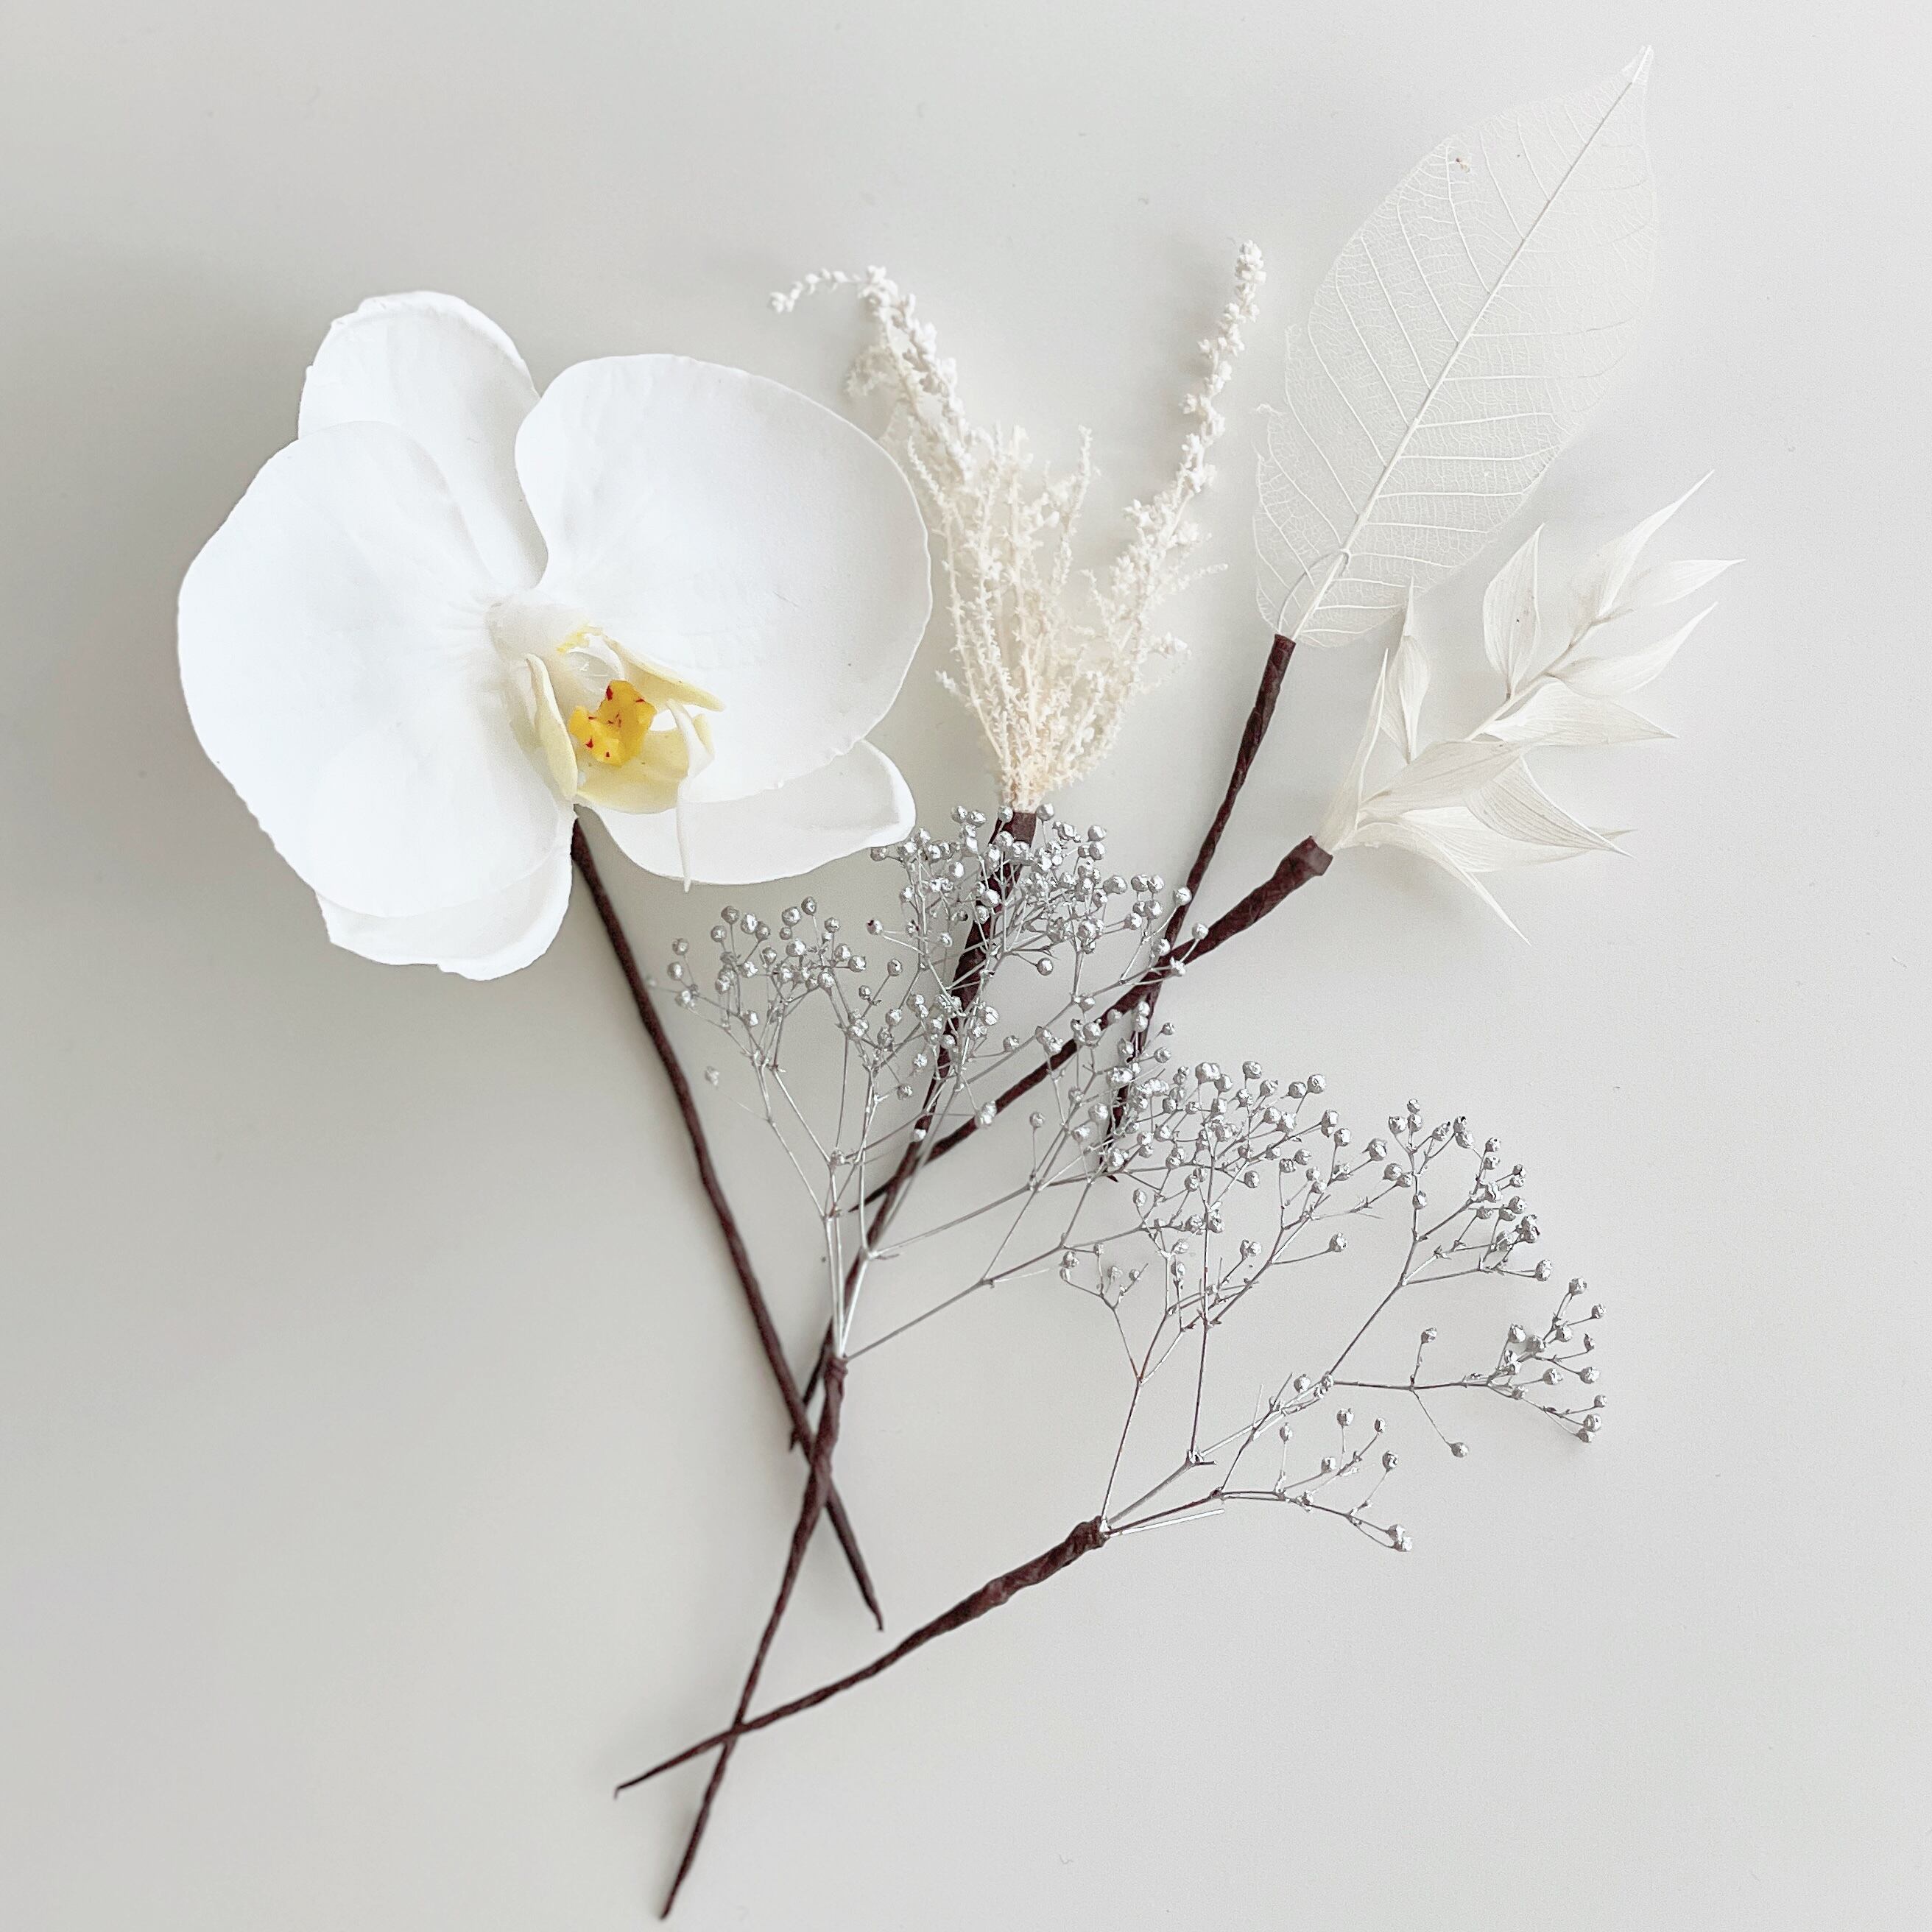 凛とした胡蝶蘭のホワイトシルバーの髪飾り✲ /ウェディング 卒業式